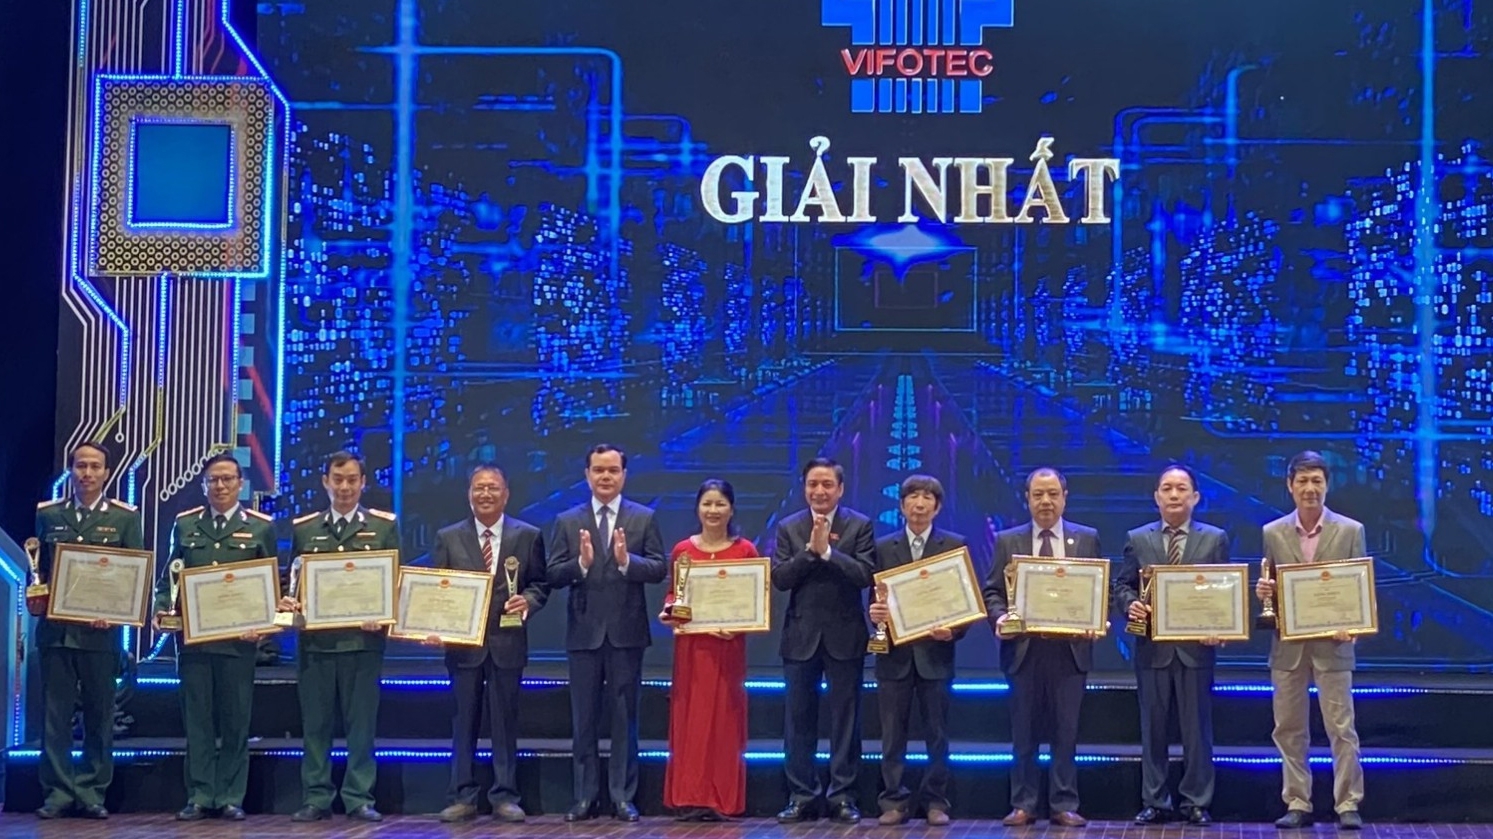 BIENDONG POC và Viện Dầu khí Việt Nam cùng giành giải Nhất Vifotec 2022